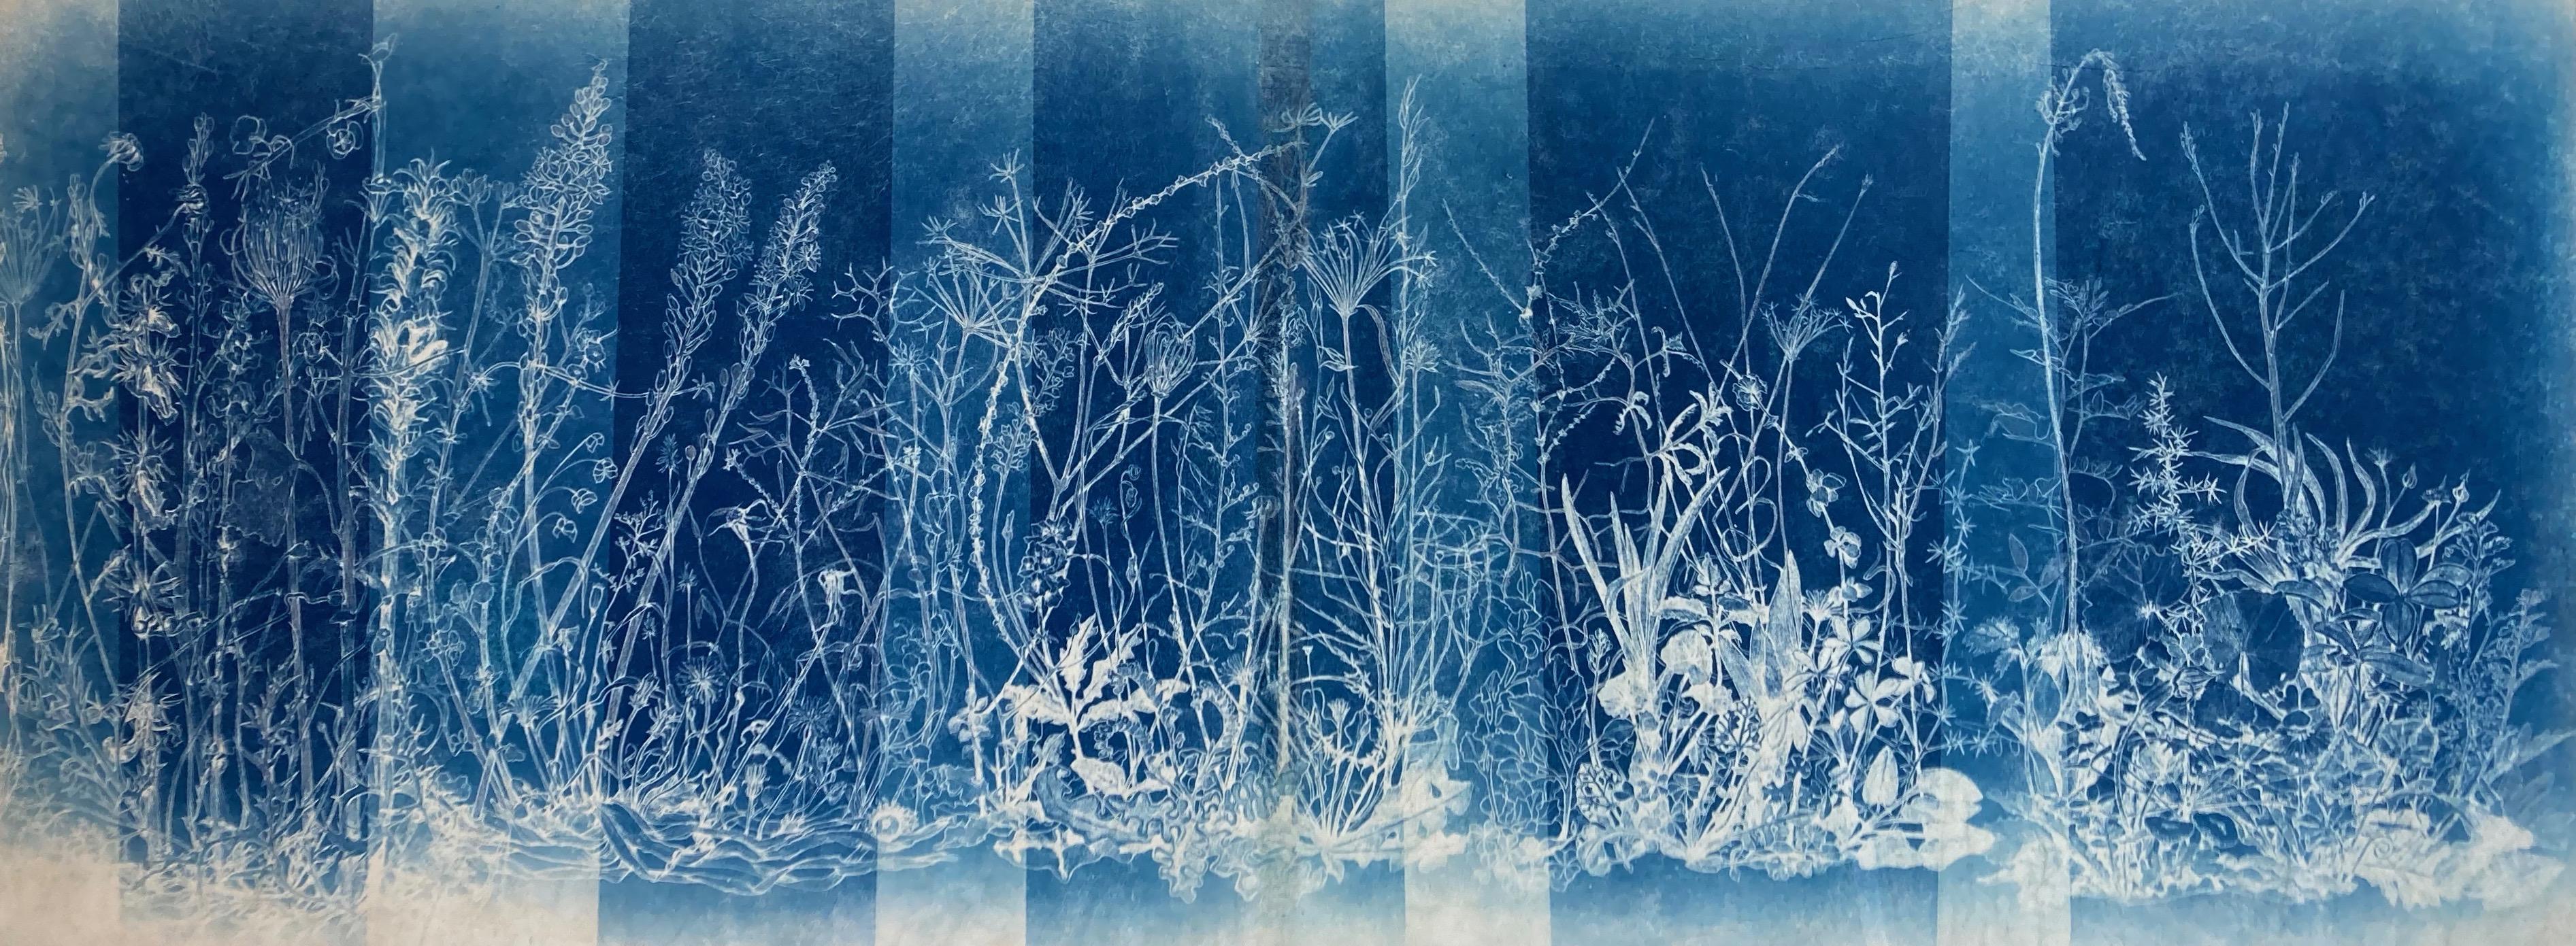 Landscape Photograph Judith Allen-Efstathiou - "Mapping the Walk" Étude photographique de fleurs réaliste/abstraite en bleu/blanc